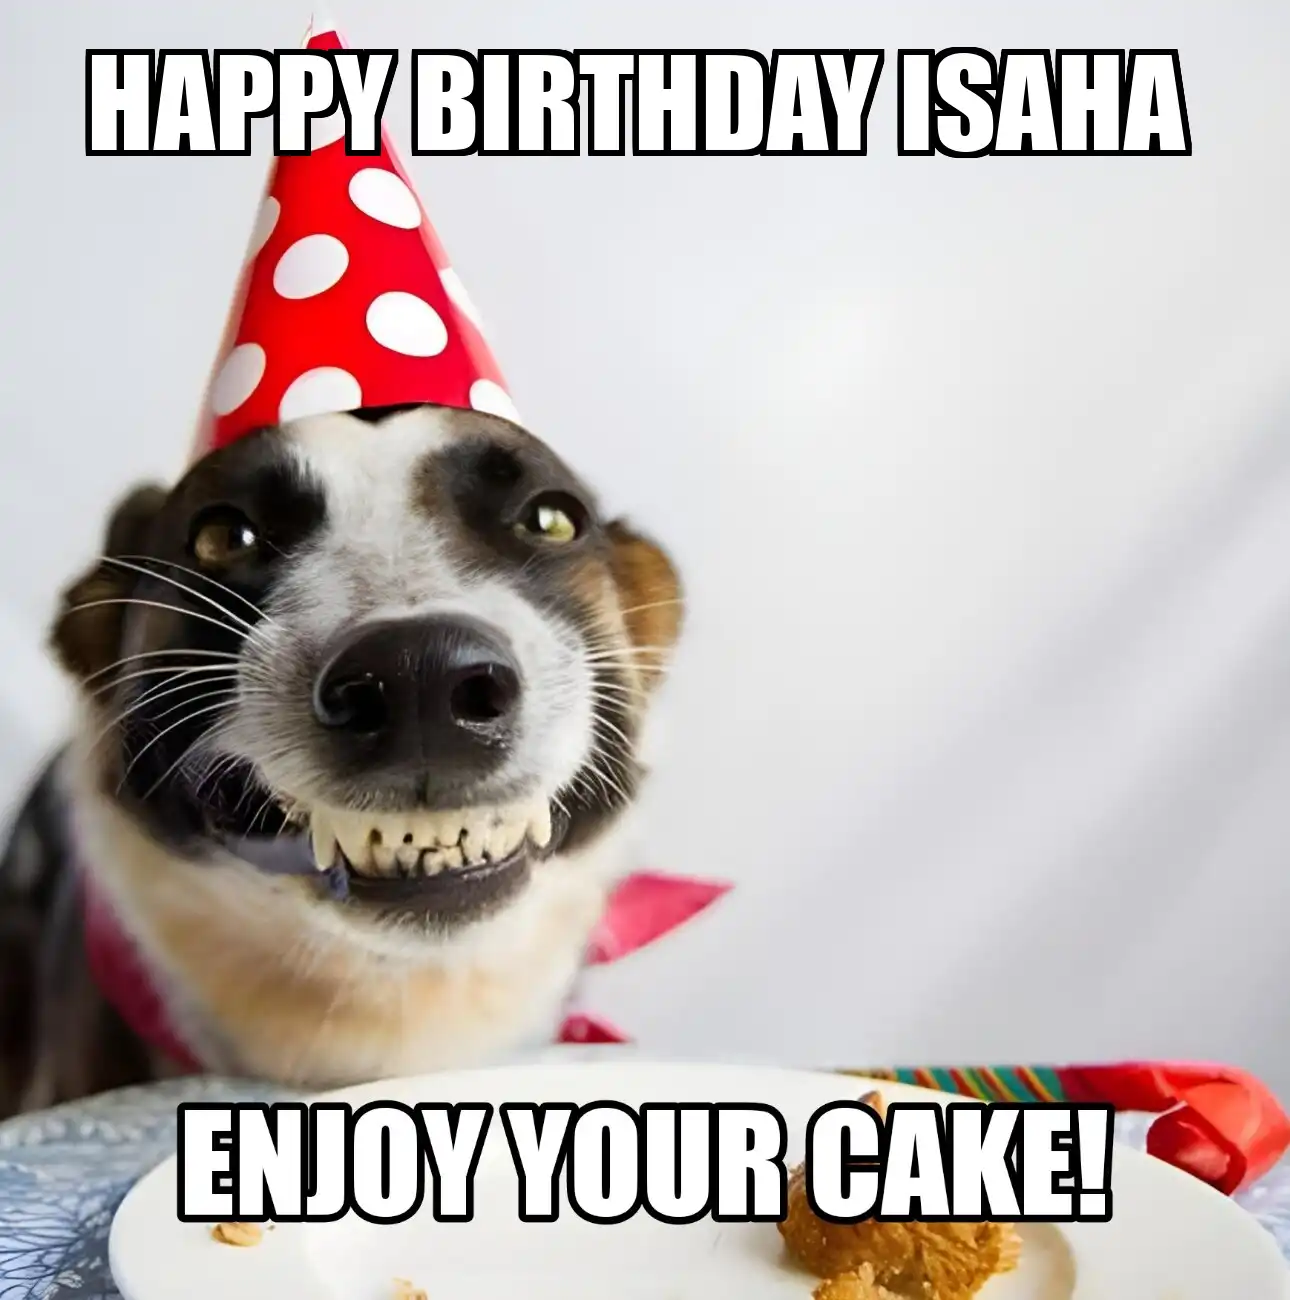 Happy Birthday Isaha Enjoy Your Cake Dog Meme